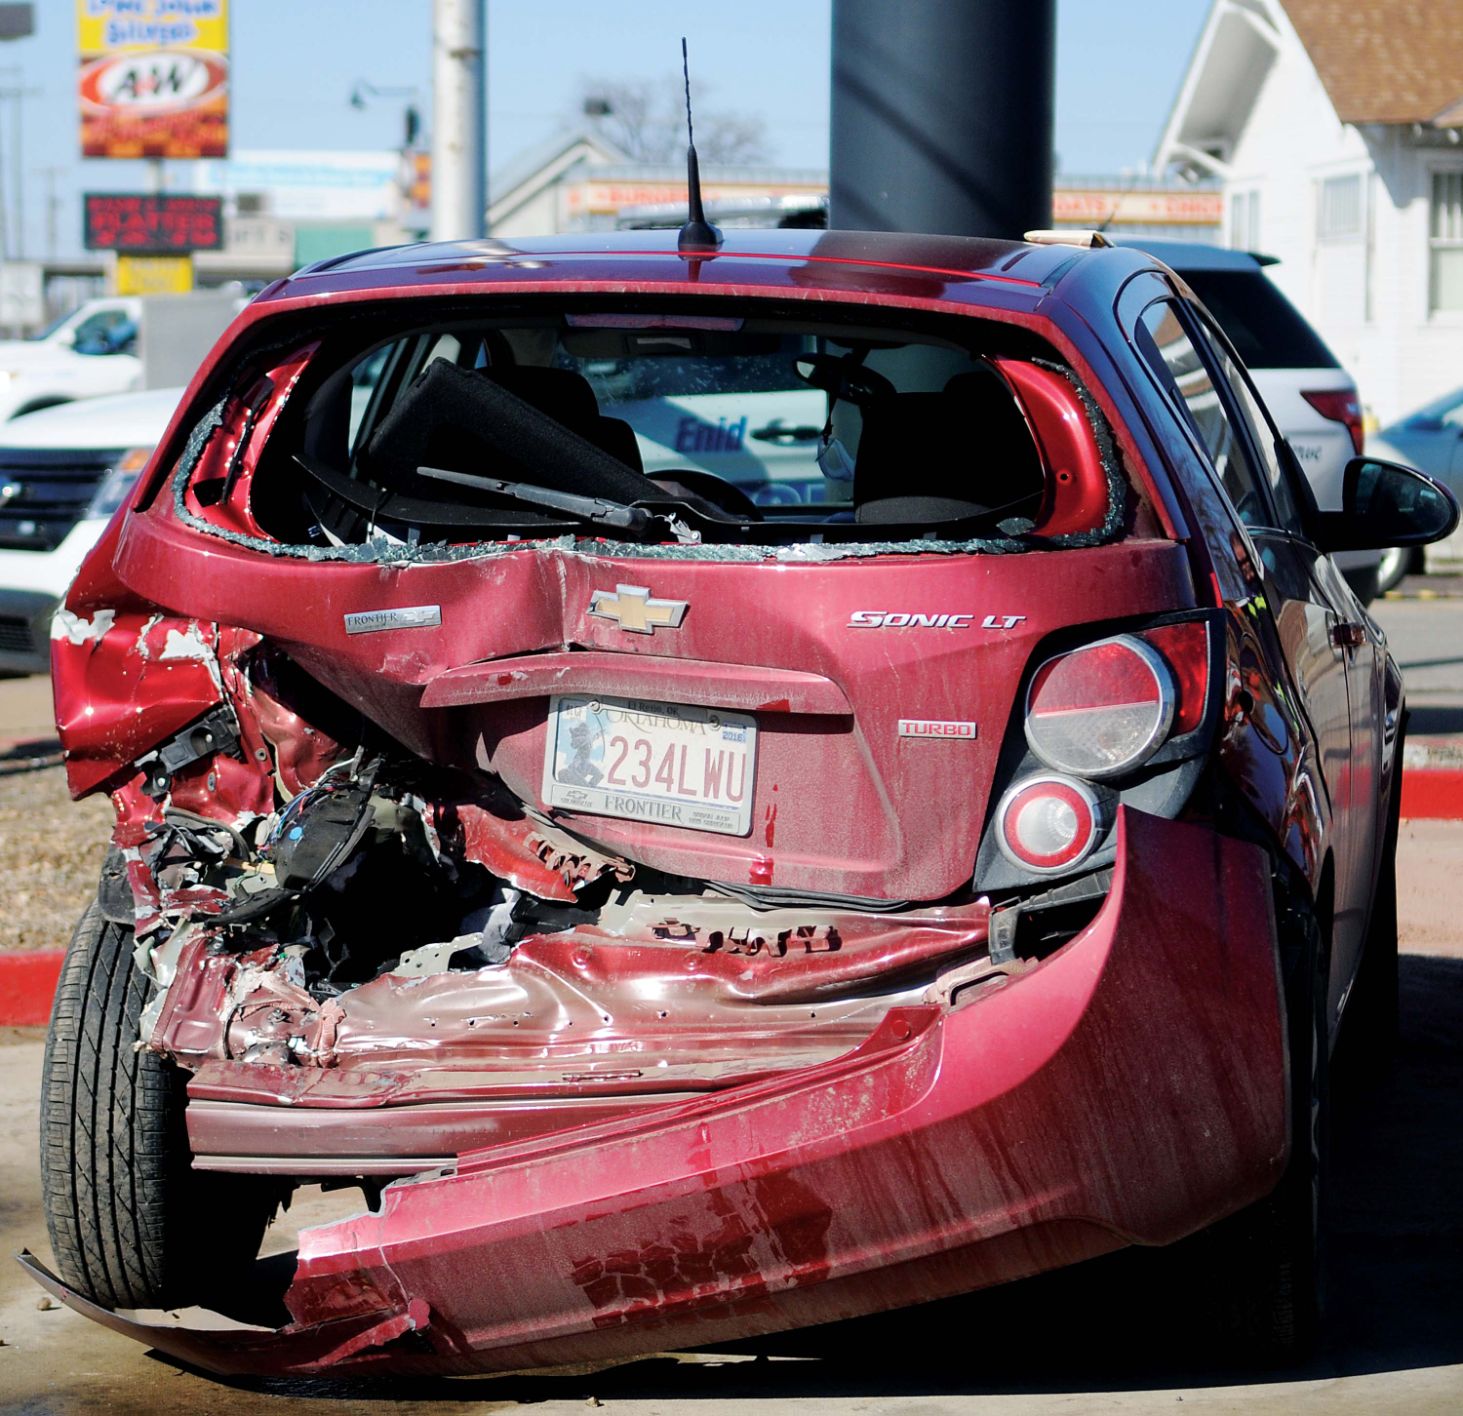 Pursuit ends in crash, mans DUI arrest News enidnews picture image